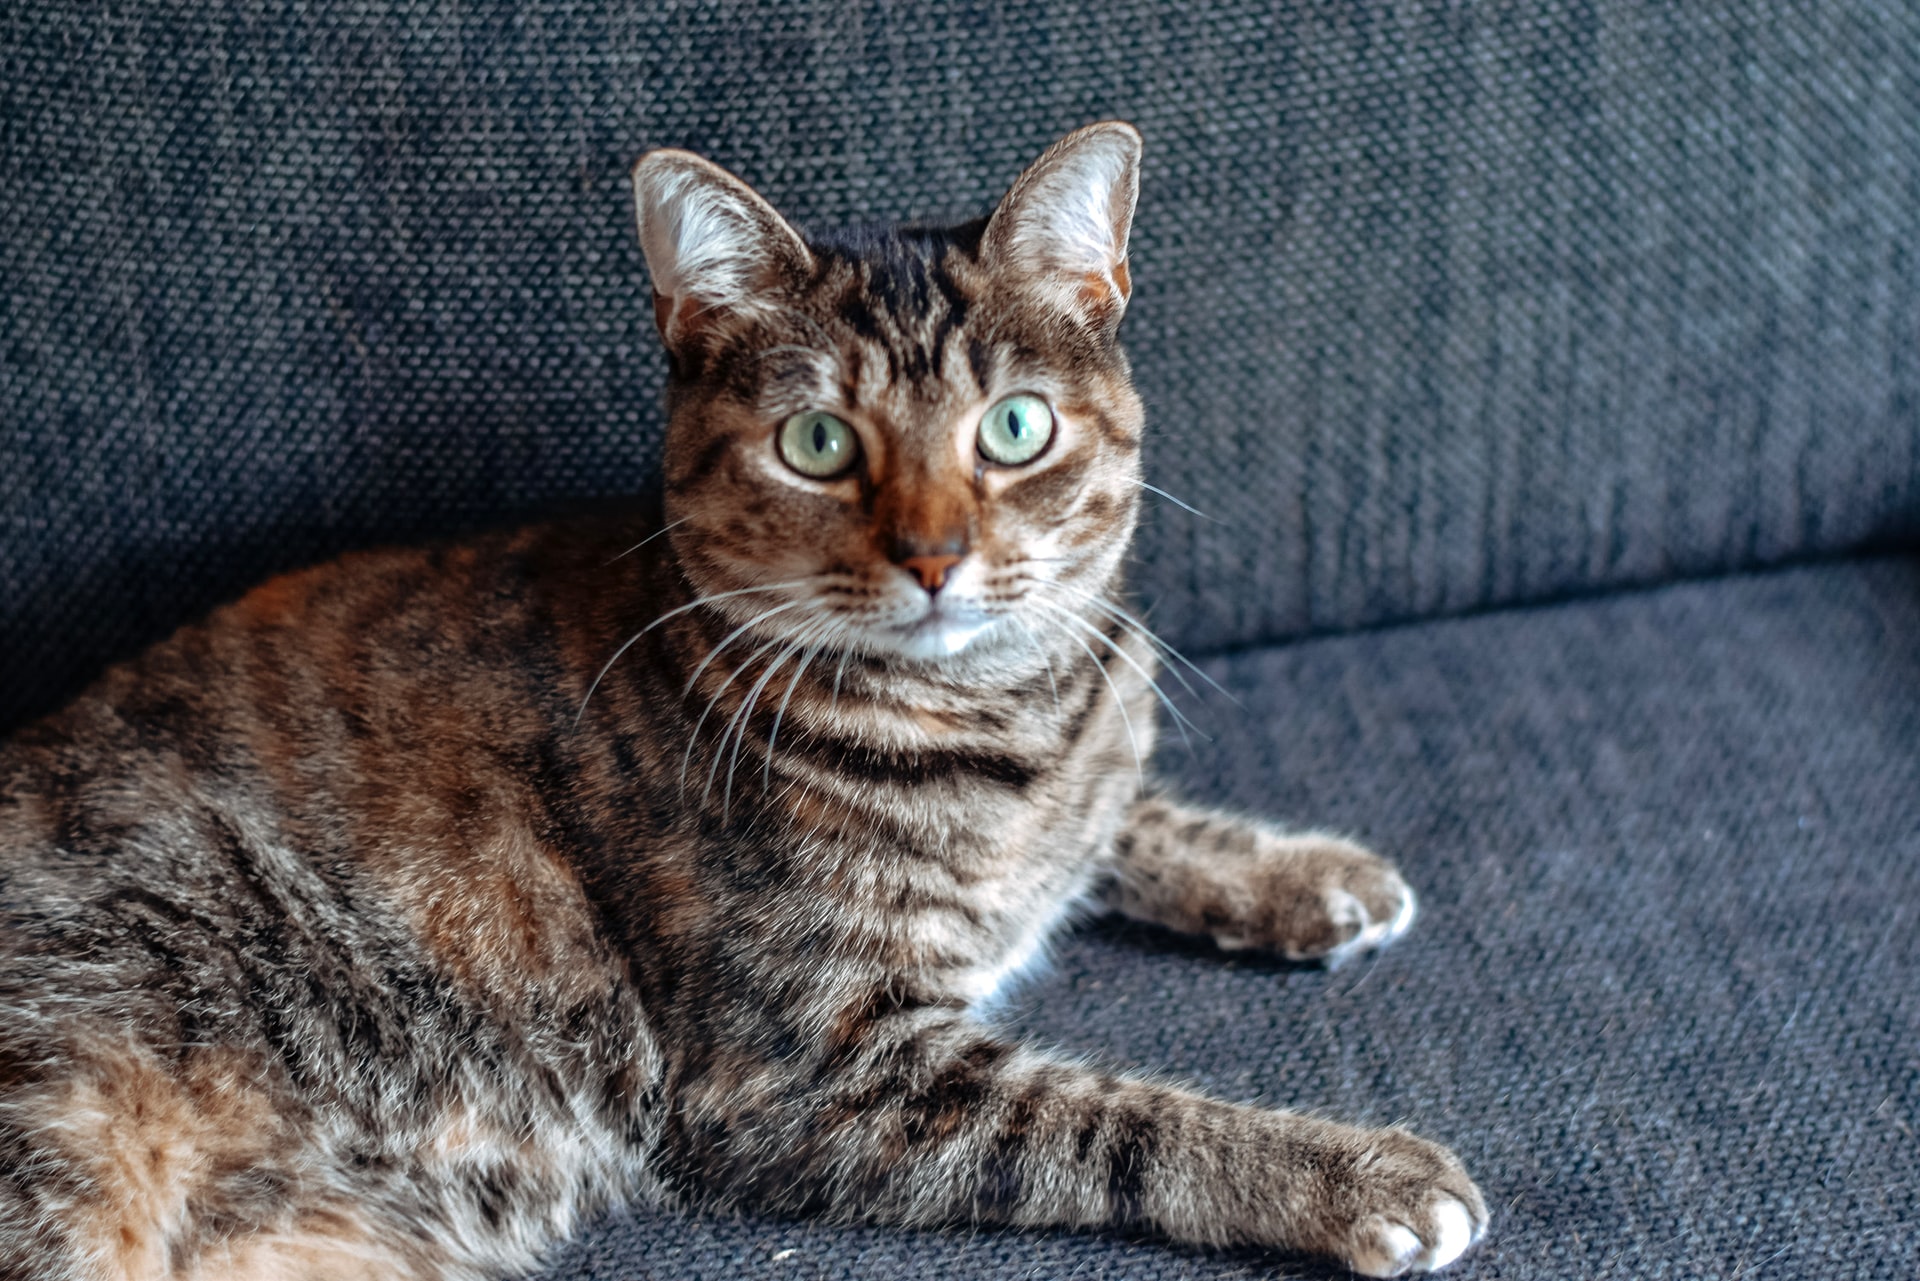 HCM hos katter: Årsaker, symptomer og behandling